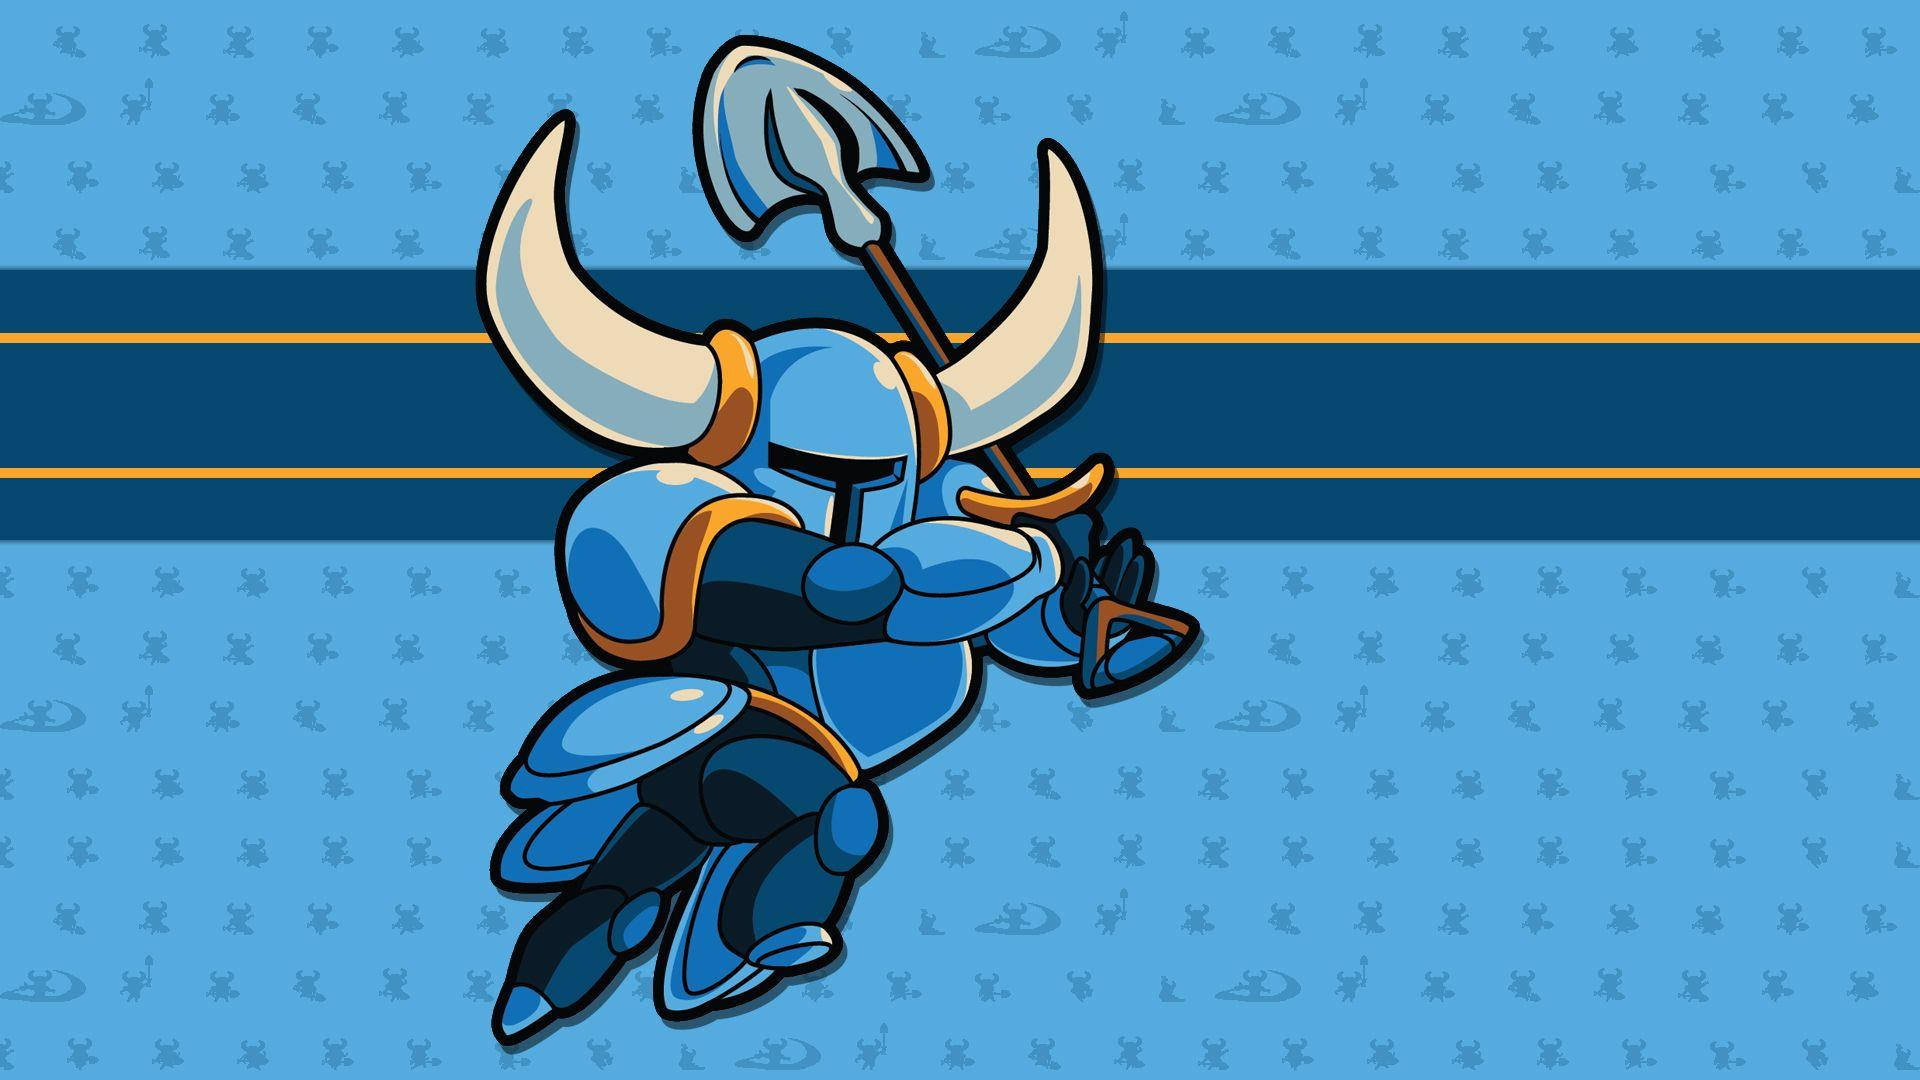 Shovel Knight In Blue Armor Wallpaper